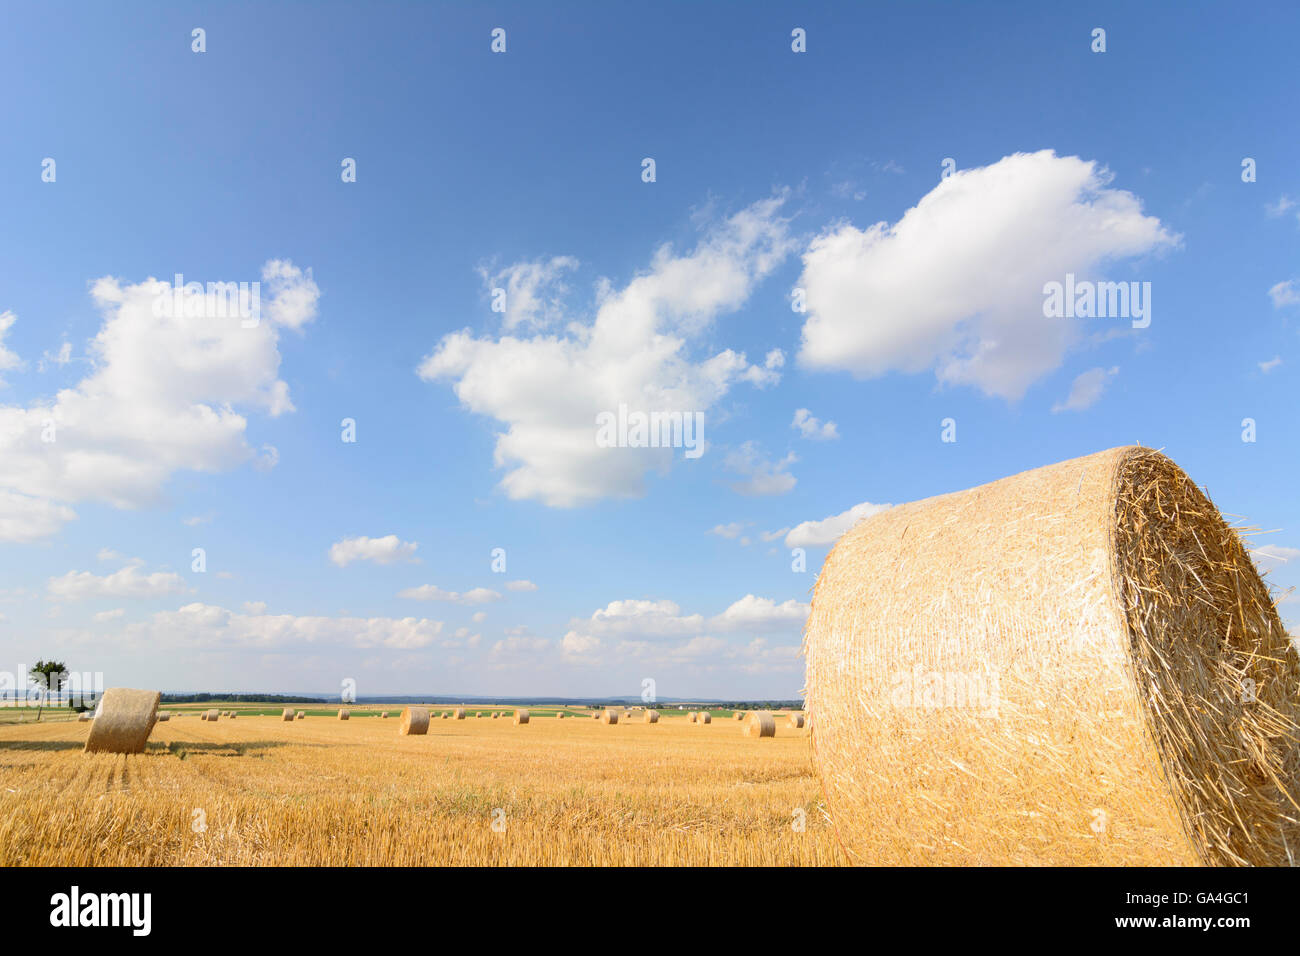 Les champs de céréales récoltées Geras avec des bottes de paille Autriche Niederösterreich, Autriche Basse-autriche Banque D'Images